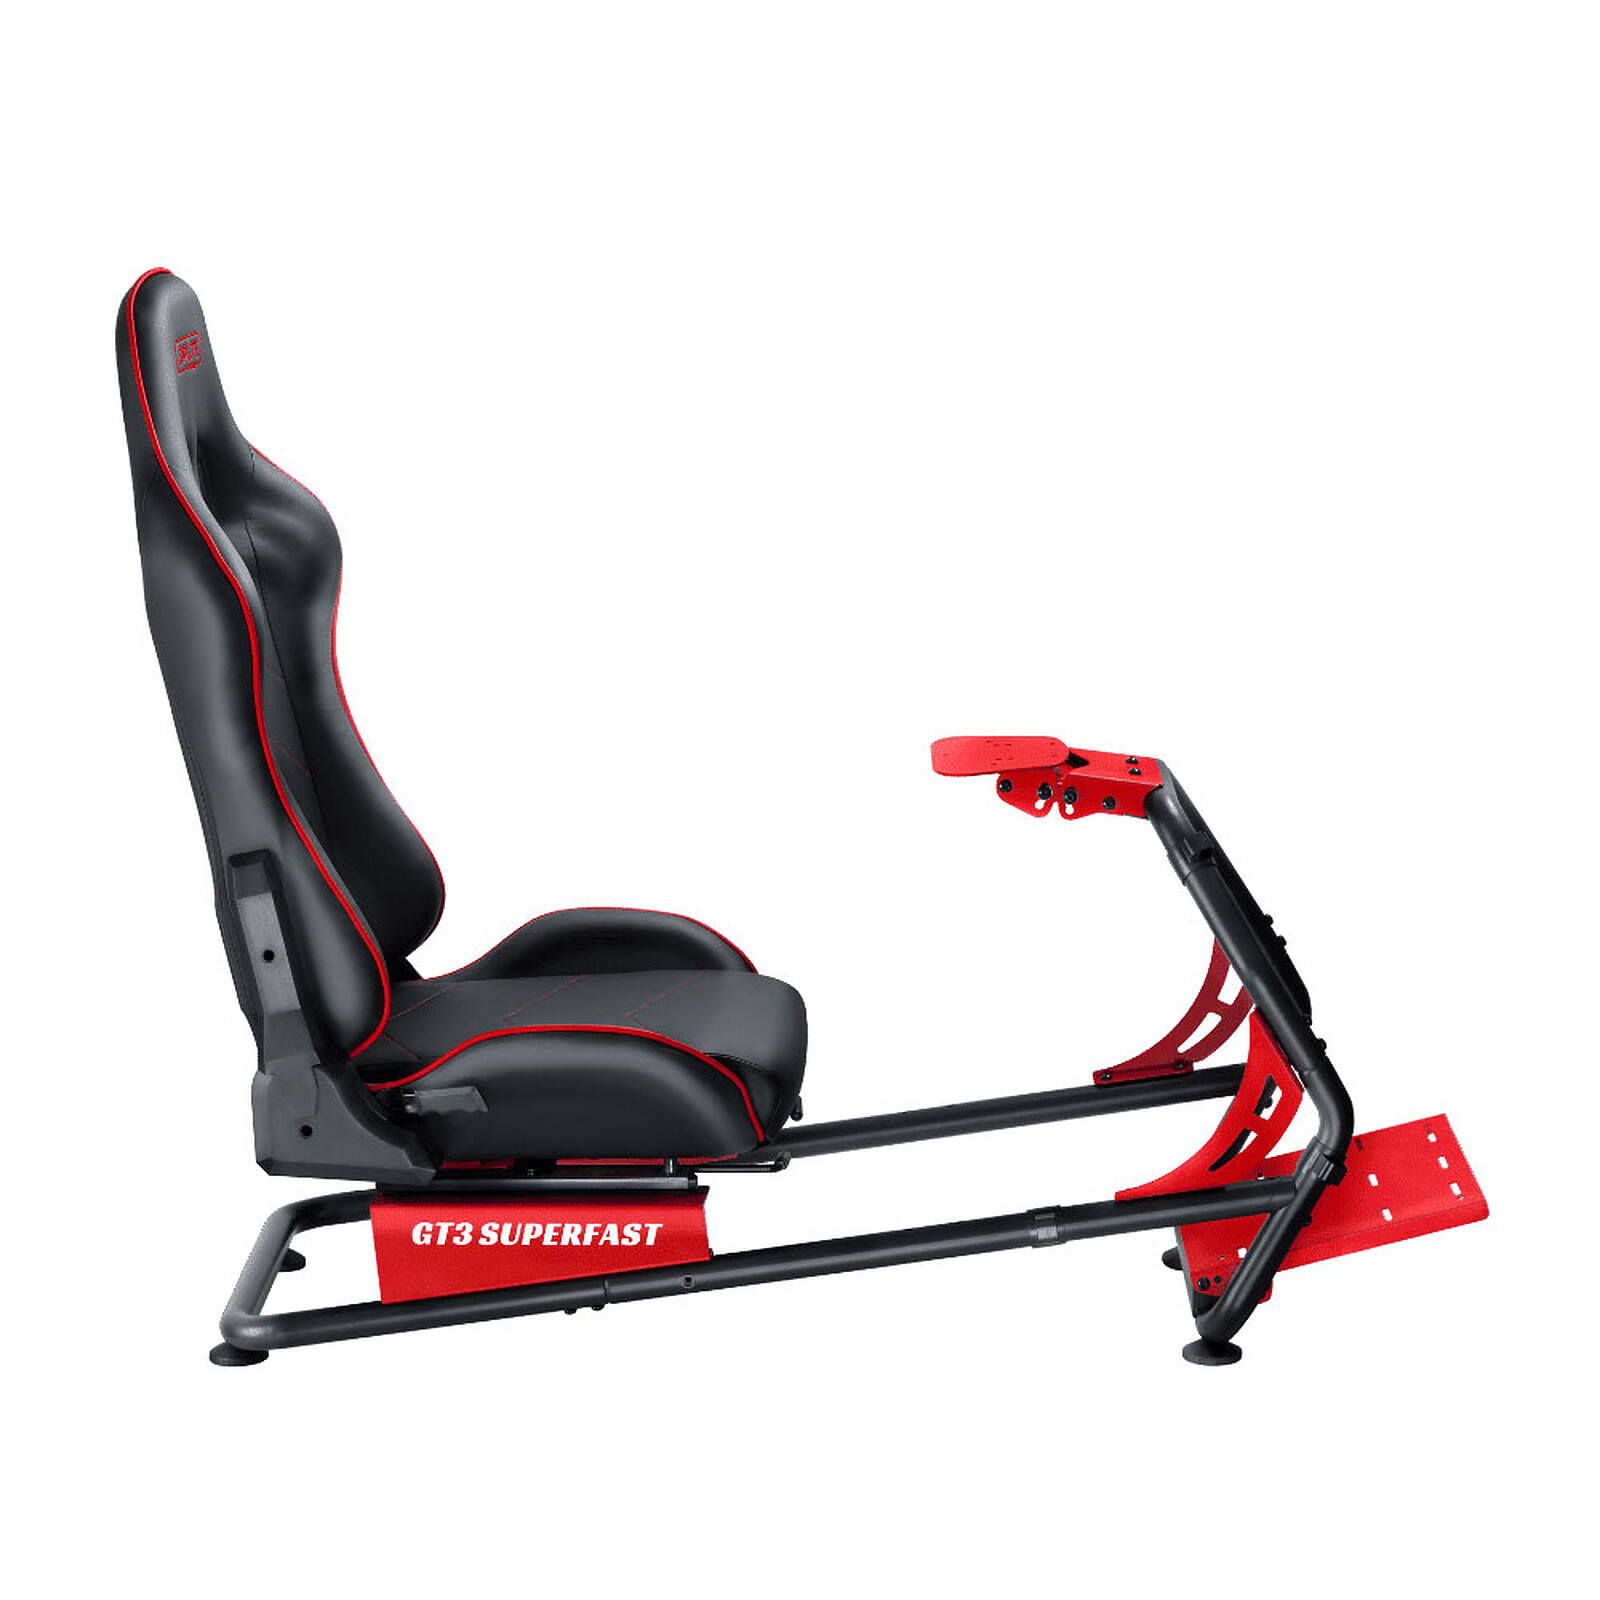 Next Level Racing Flight Seat Pro - Autres accessoires jeu - Garantie 3 ans  LDLC